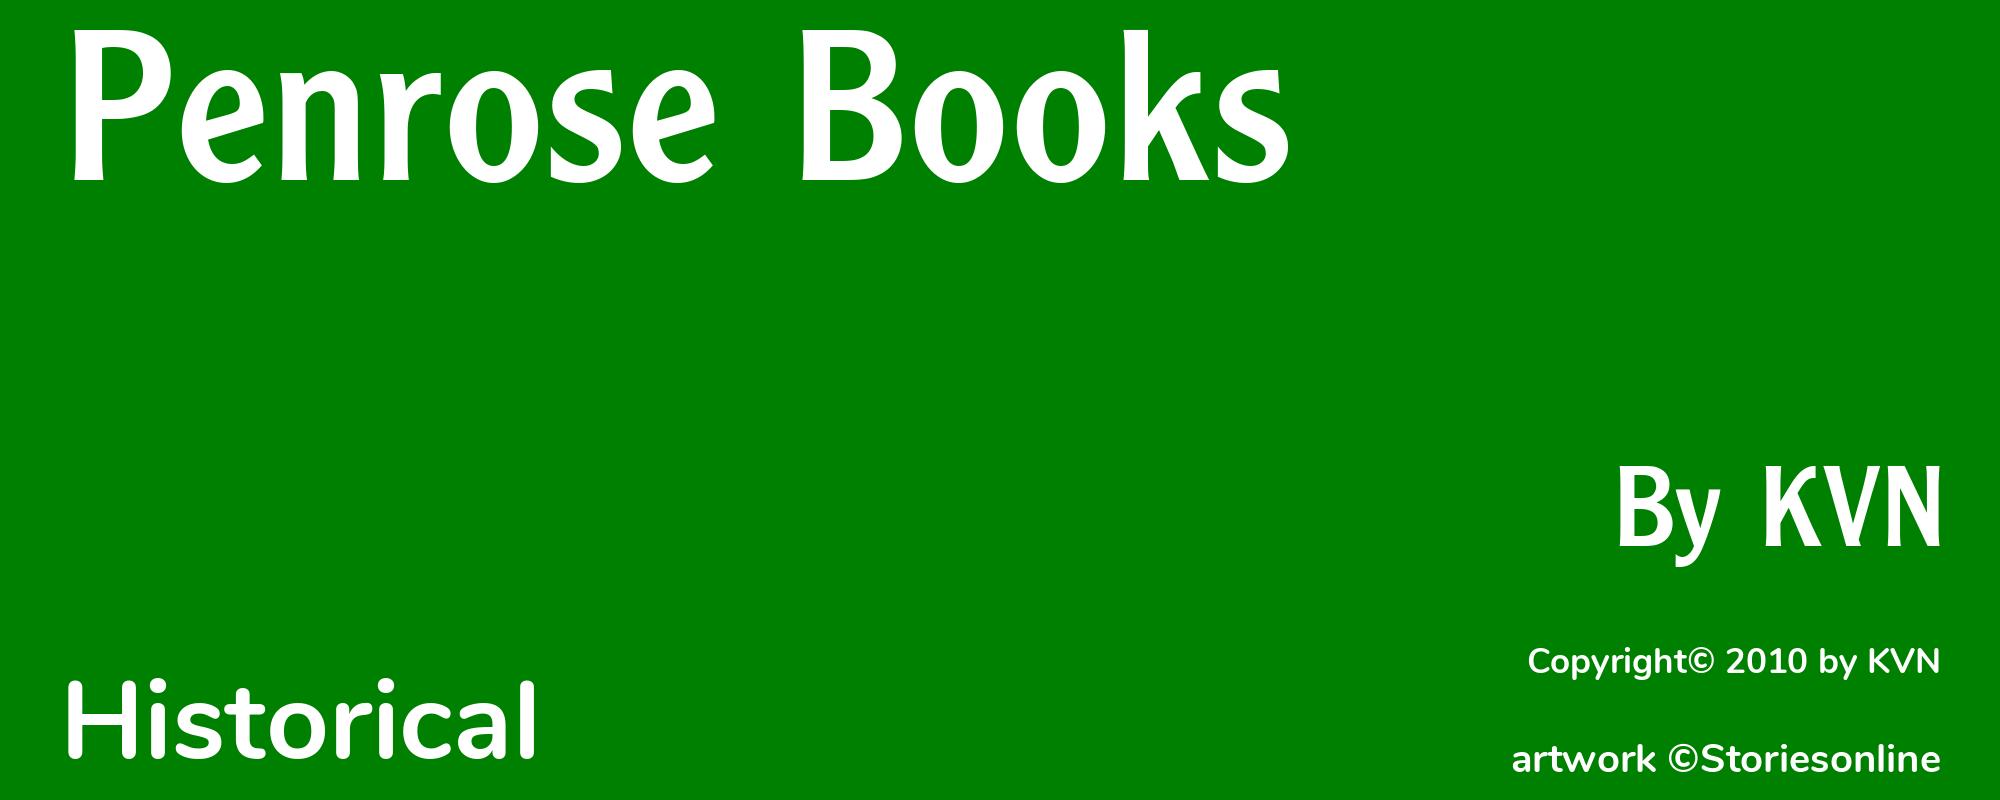 Penrose Books - Cover